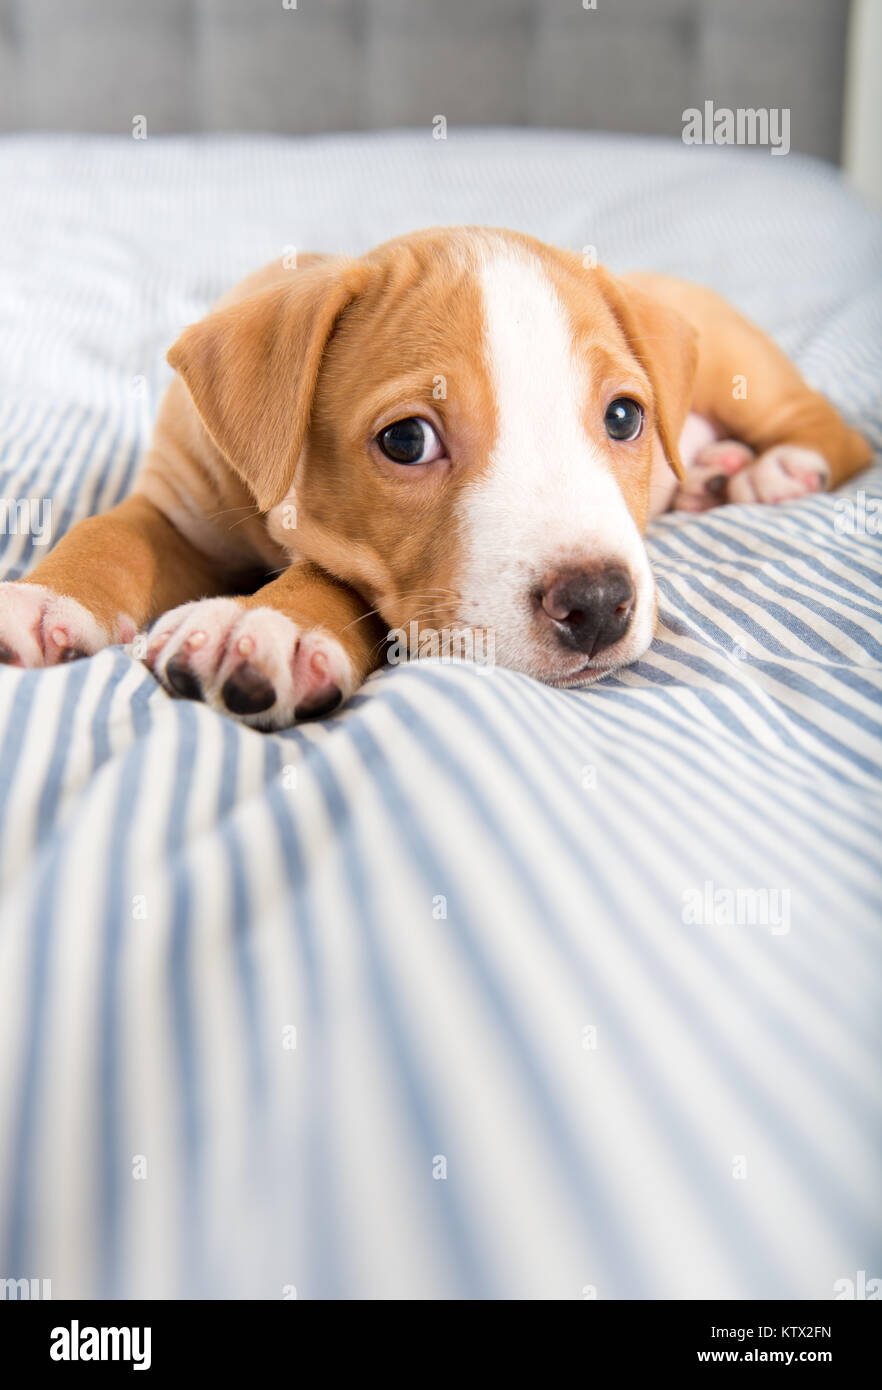 Winzige Adorable Puppy Handauflegen gestreifte Decke Stockfoto